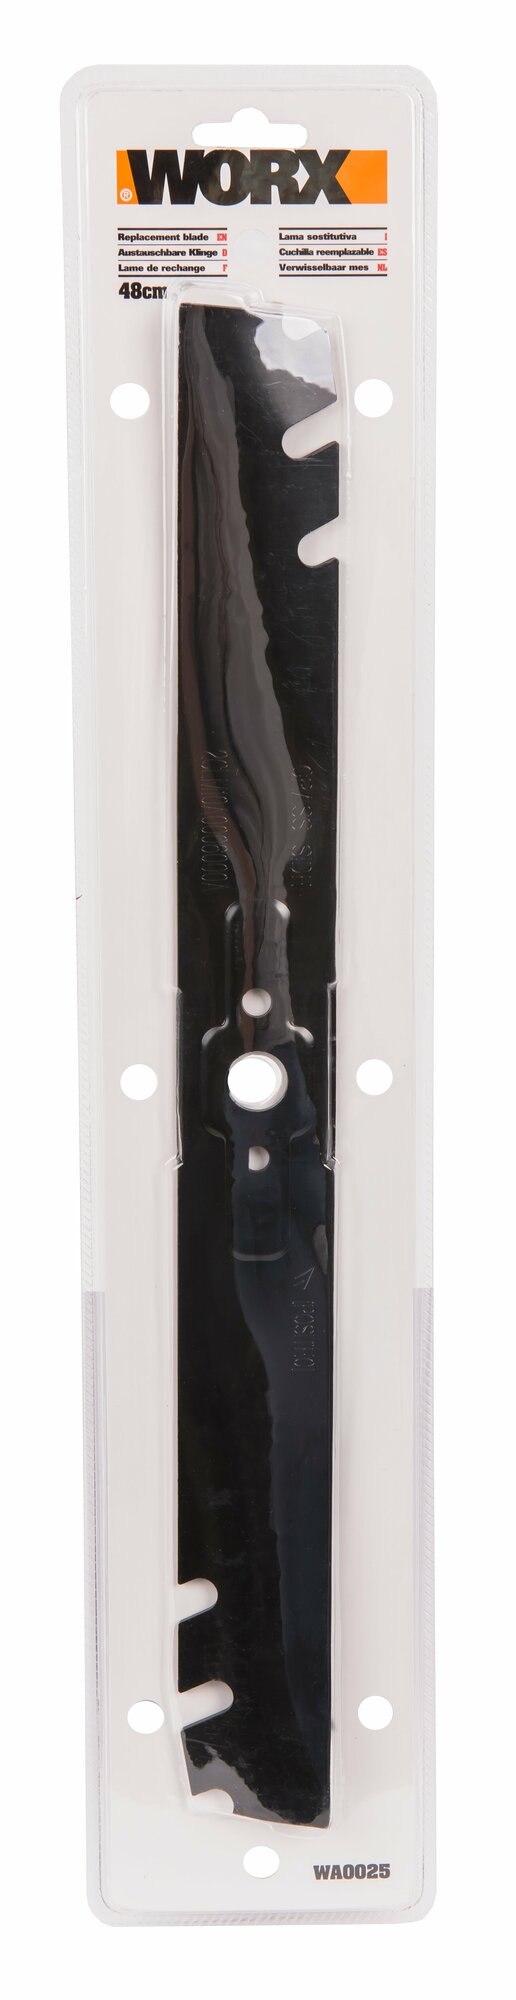 Нож для газонокосилки WORX WA0025 48